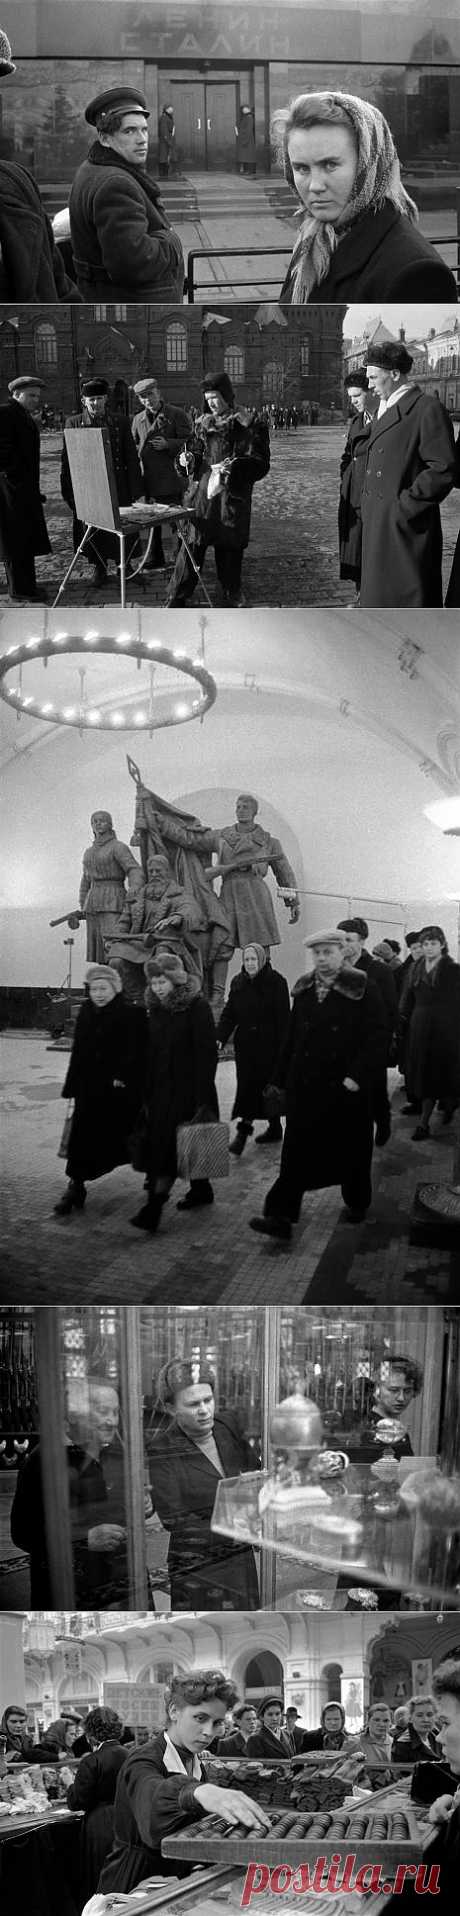 Москва 1958 года в фотографиях Эриха Лессинга |